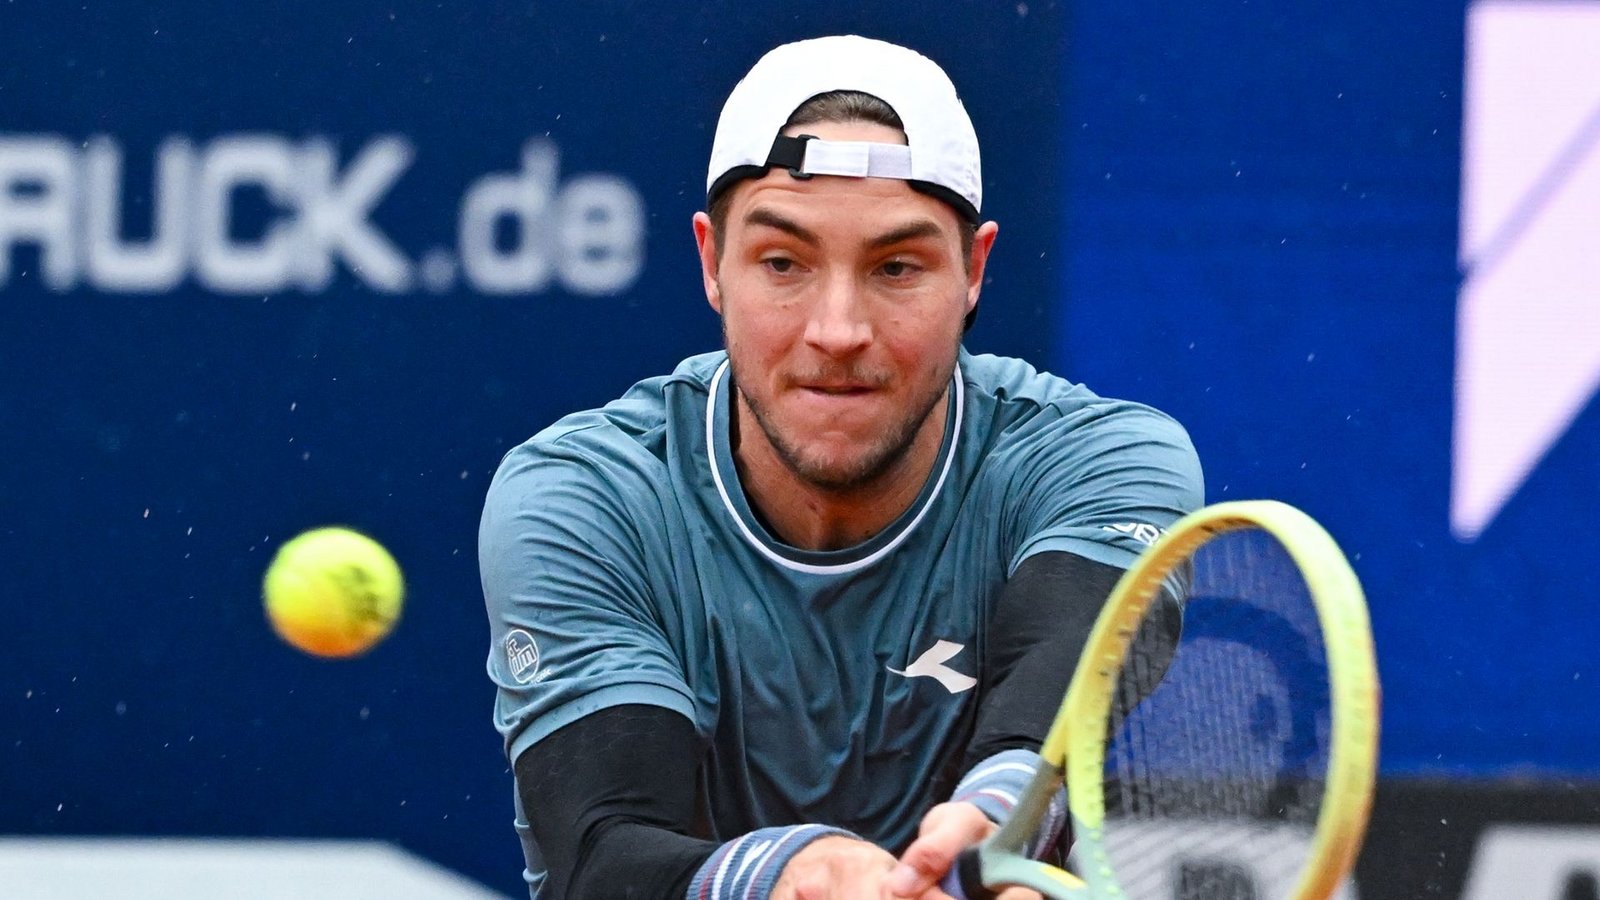 Tennisprofi Jan-Lennard Struff erreichte in München das Halbfinale.Foto: Sven Hoppe/dpa